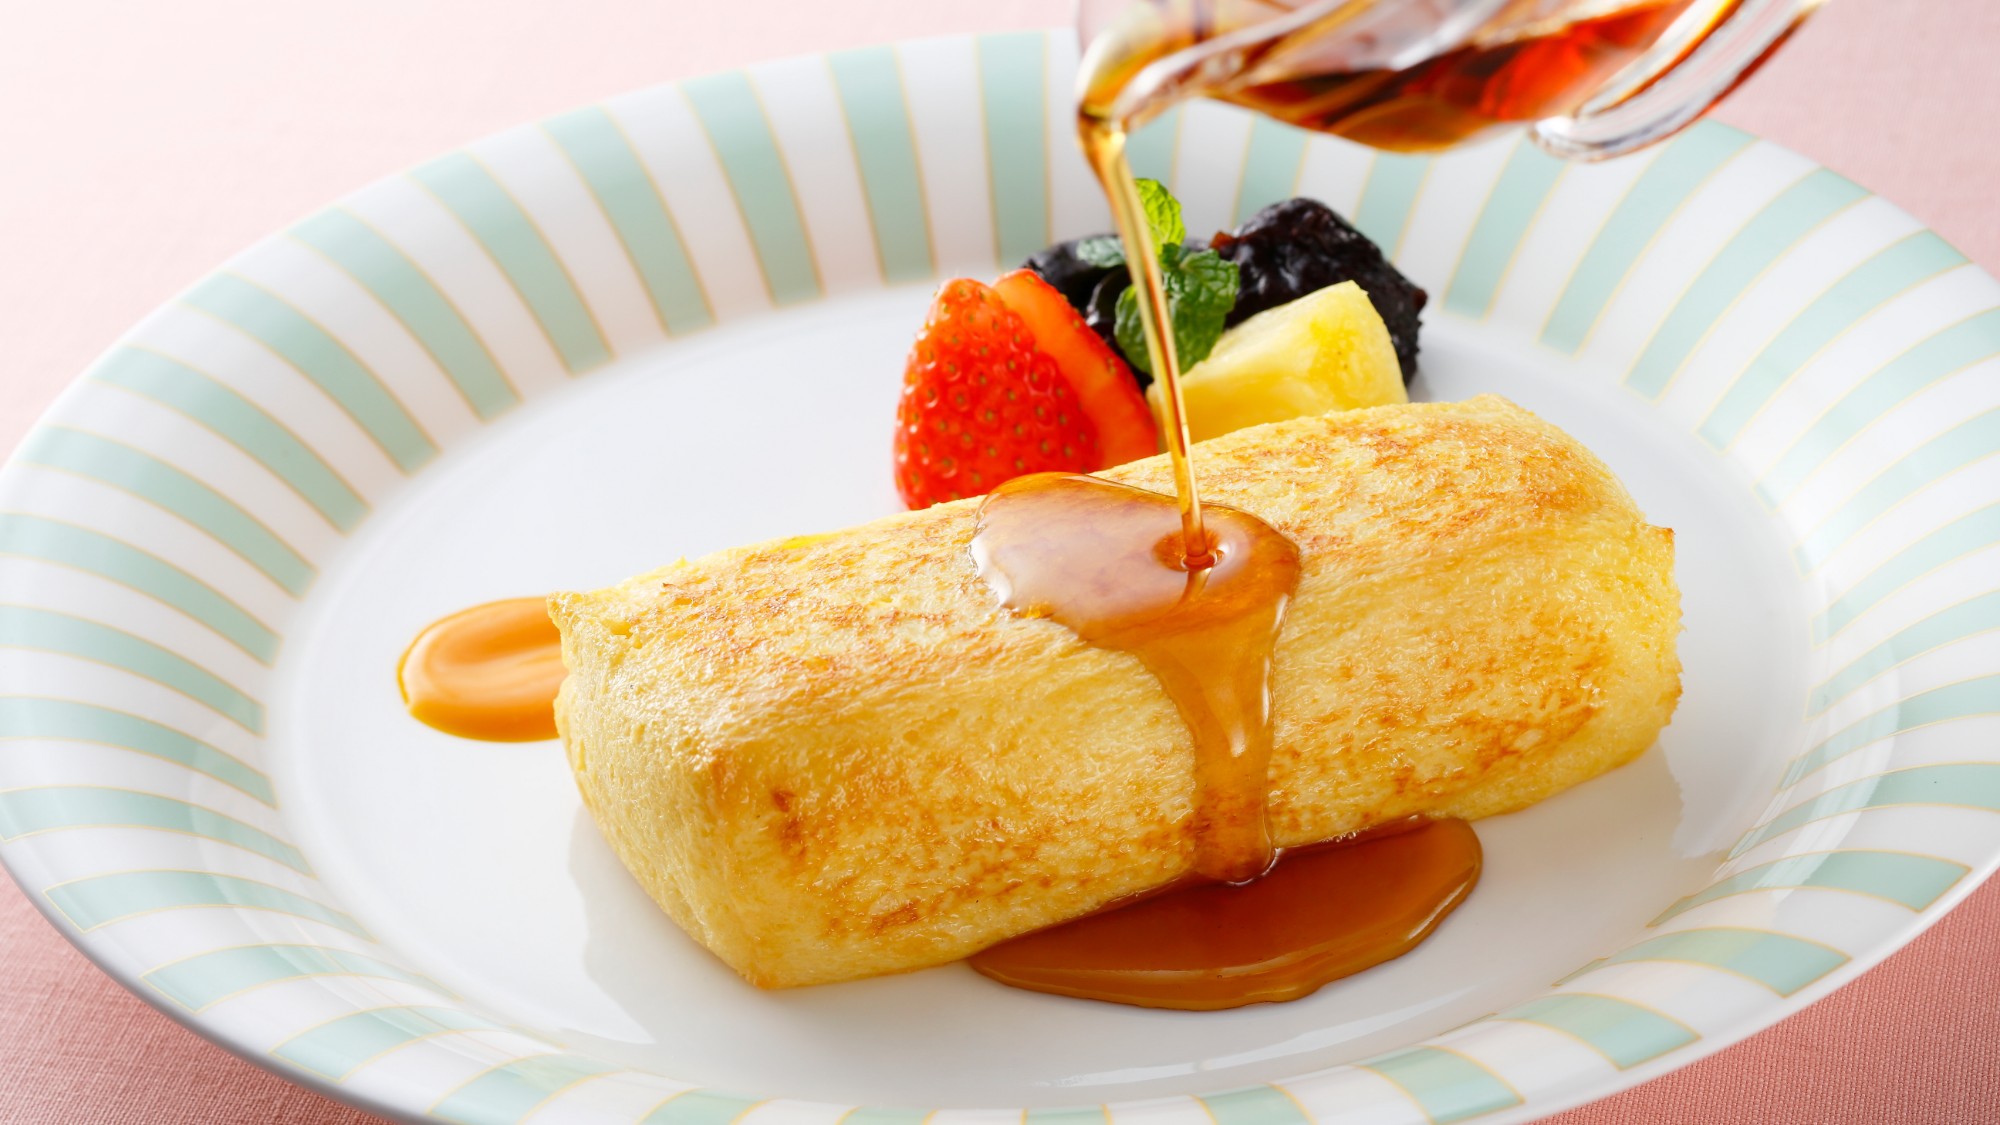 【ルームサービスで優雅な朝を】オークラ伝統の味・フレンチトースト朝食付〜幸せな1日のはじまり〜